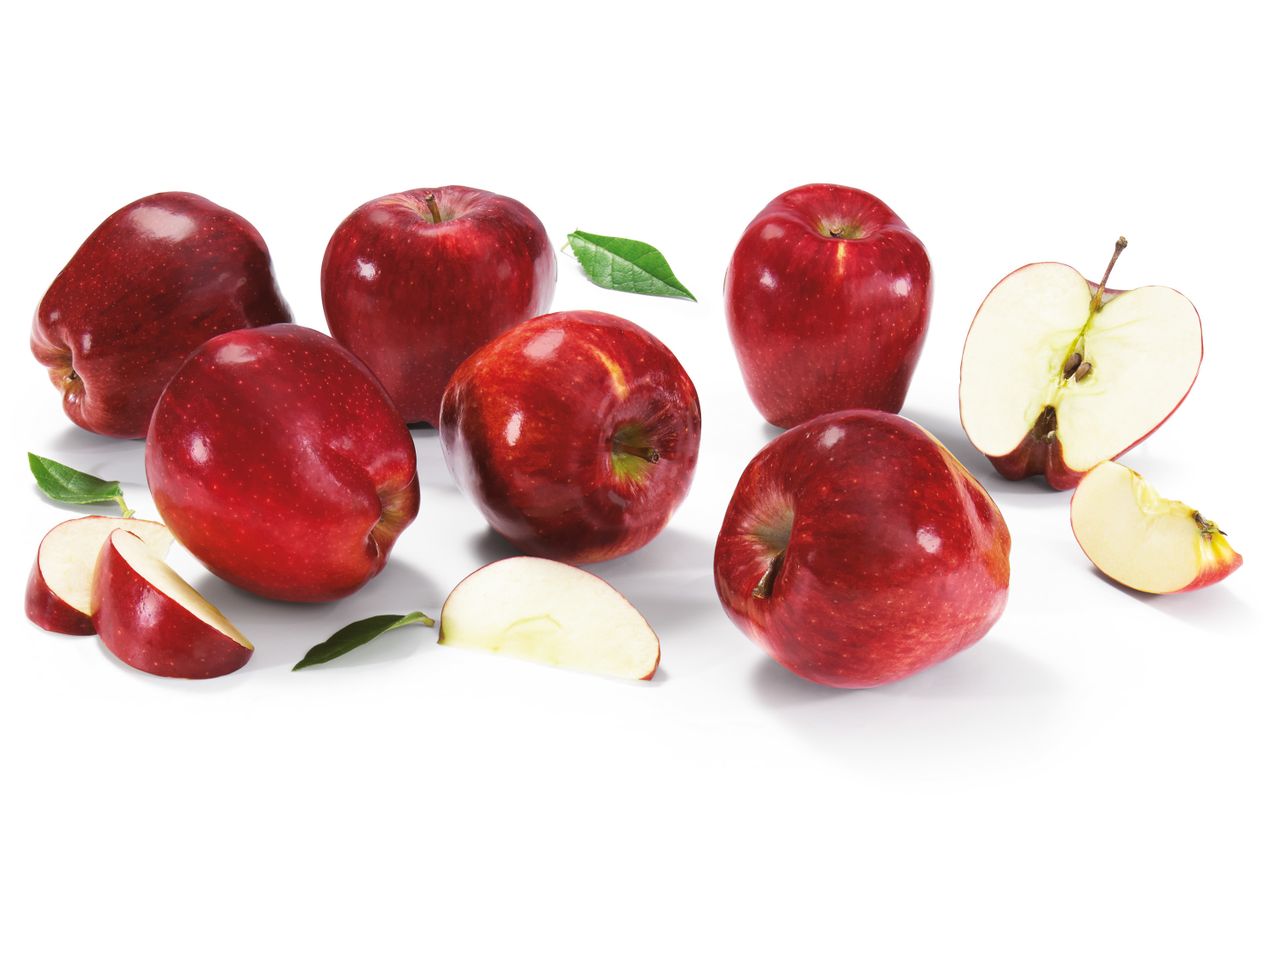 Άνοιγμα σε πλήρης οθόνη: Ελληνικά μήλα Starking - Εικόνα 1